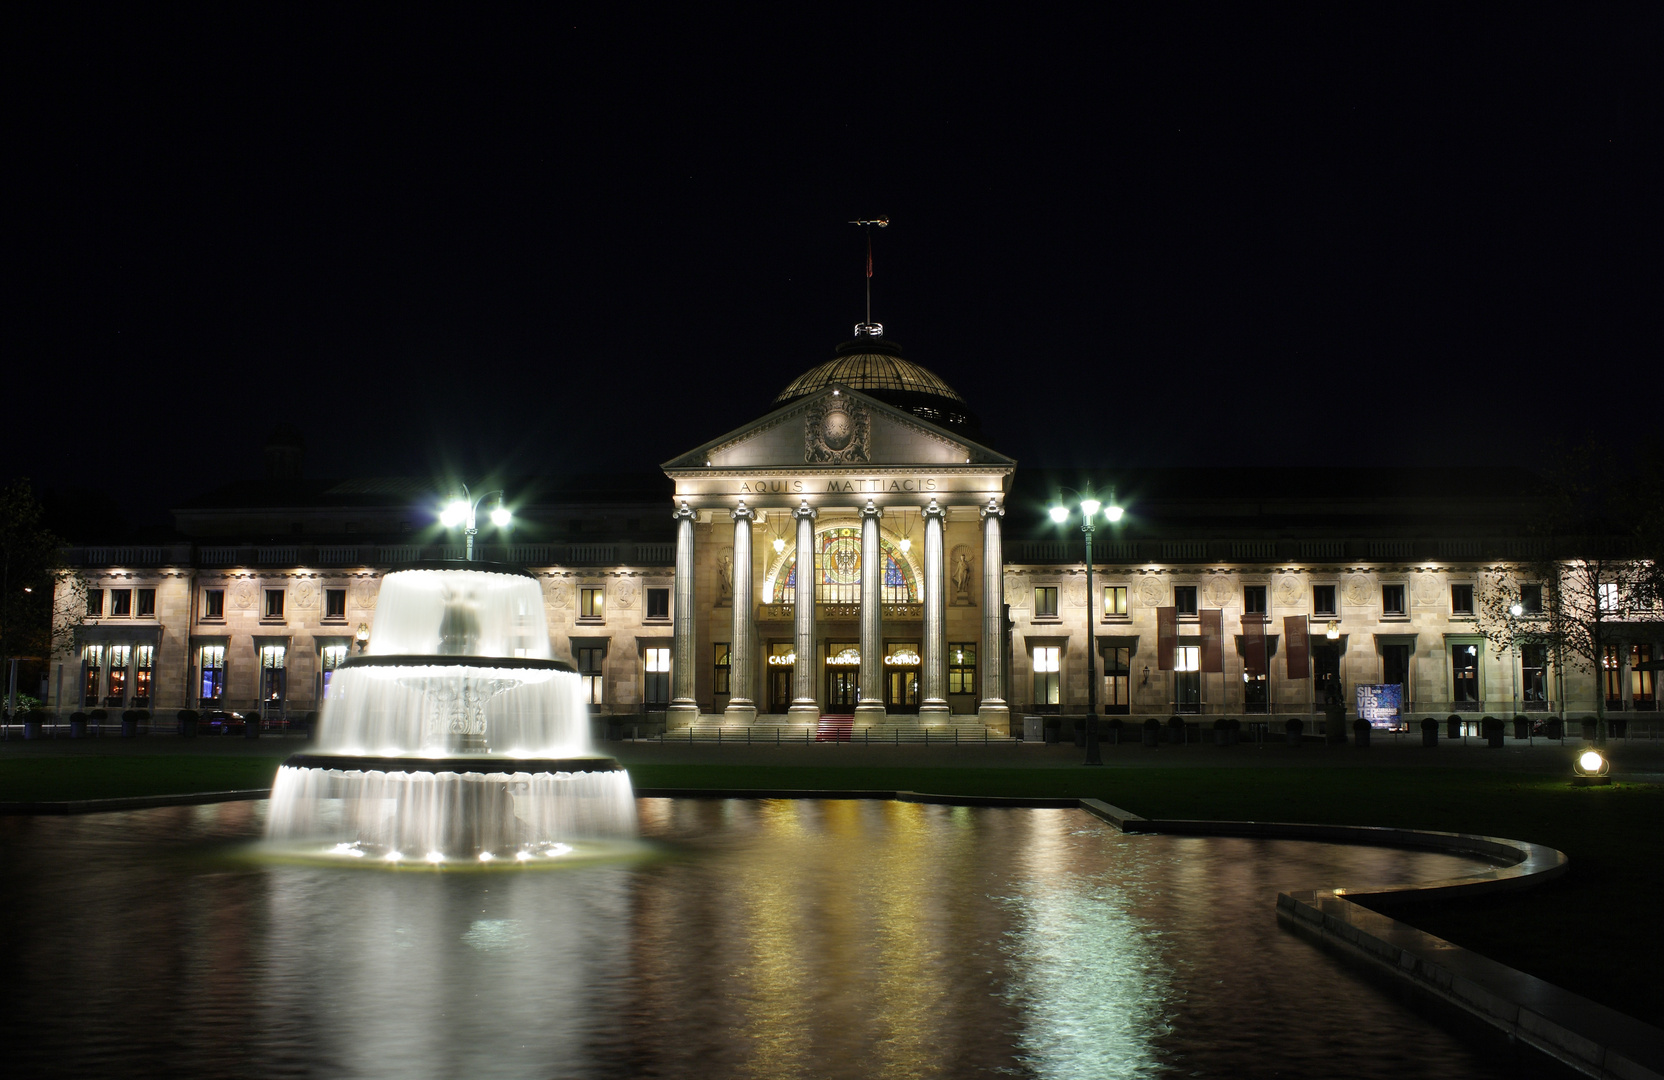 Kurhaus Wiesbaden bei Nacht